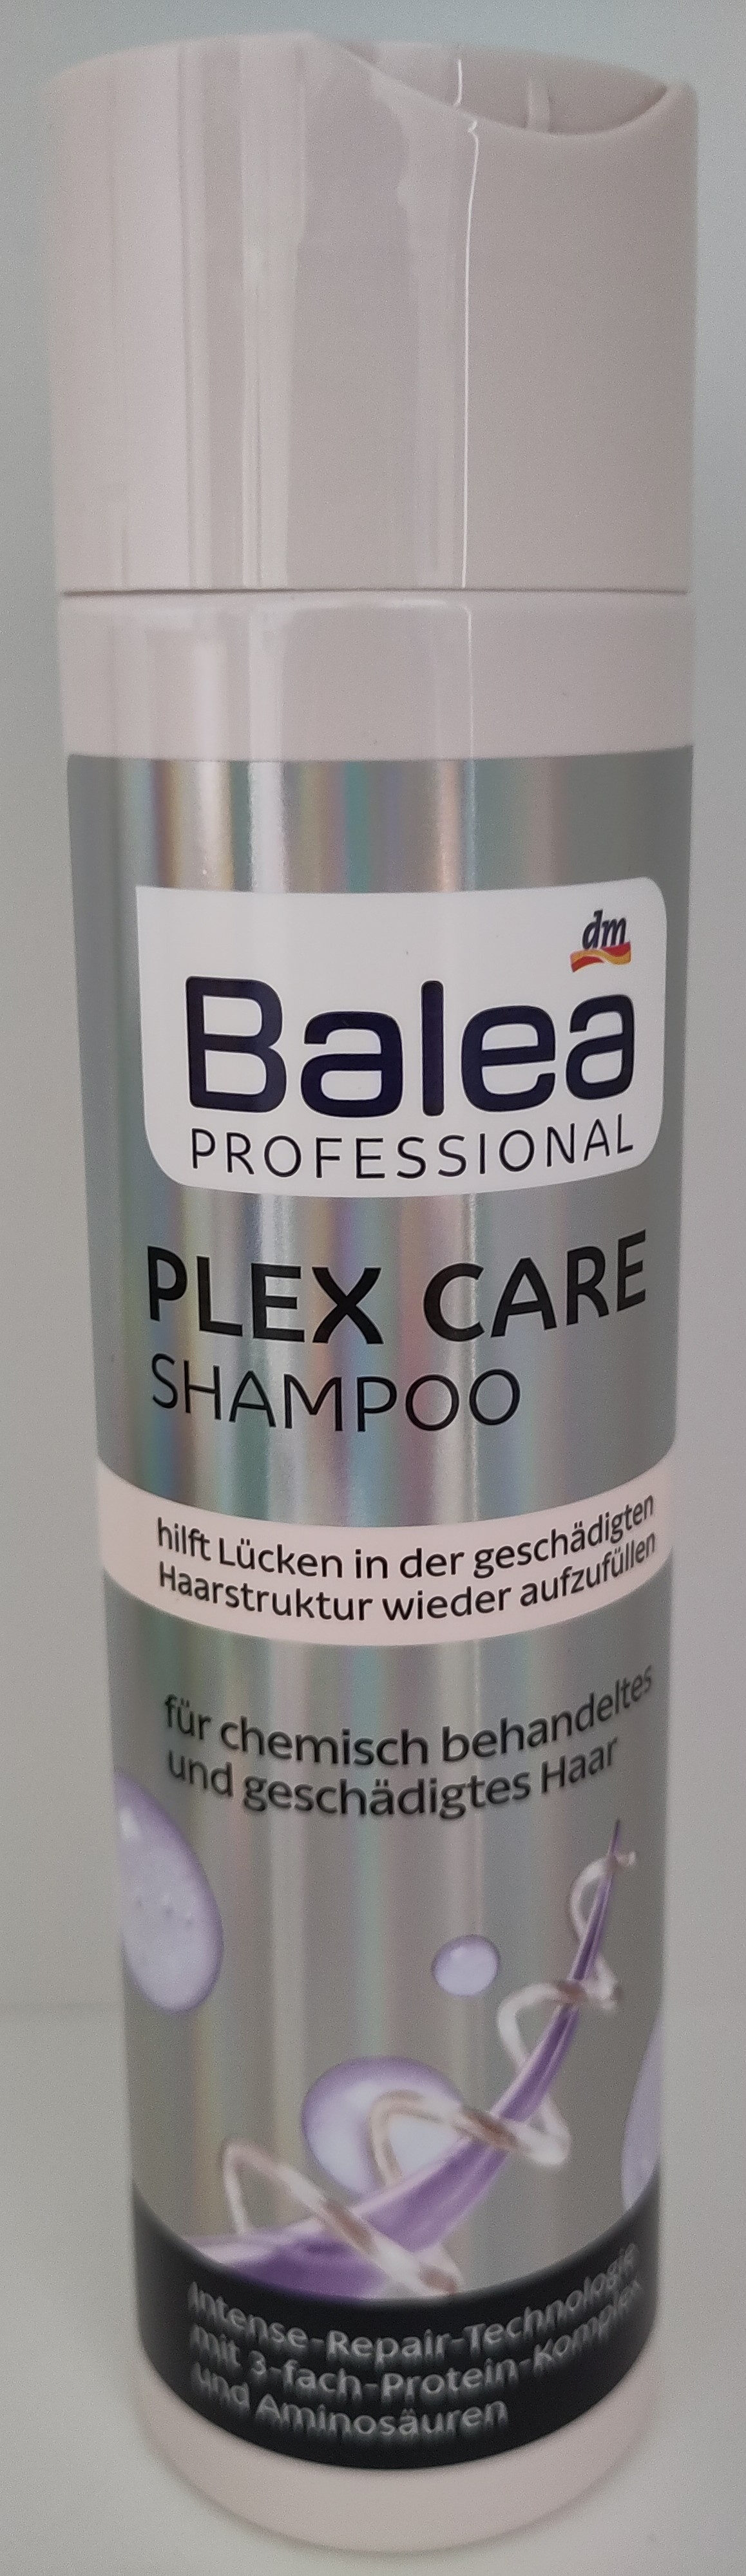 Plex Care Shampoo - Produkt - de